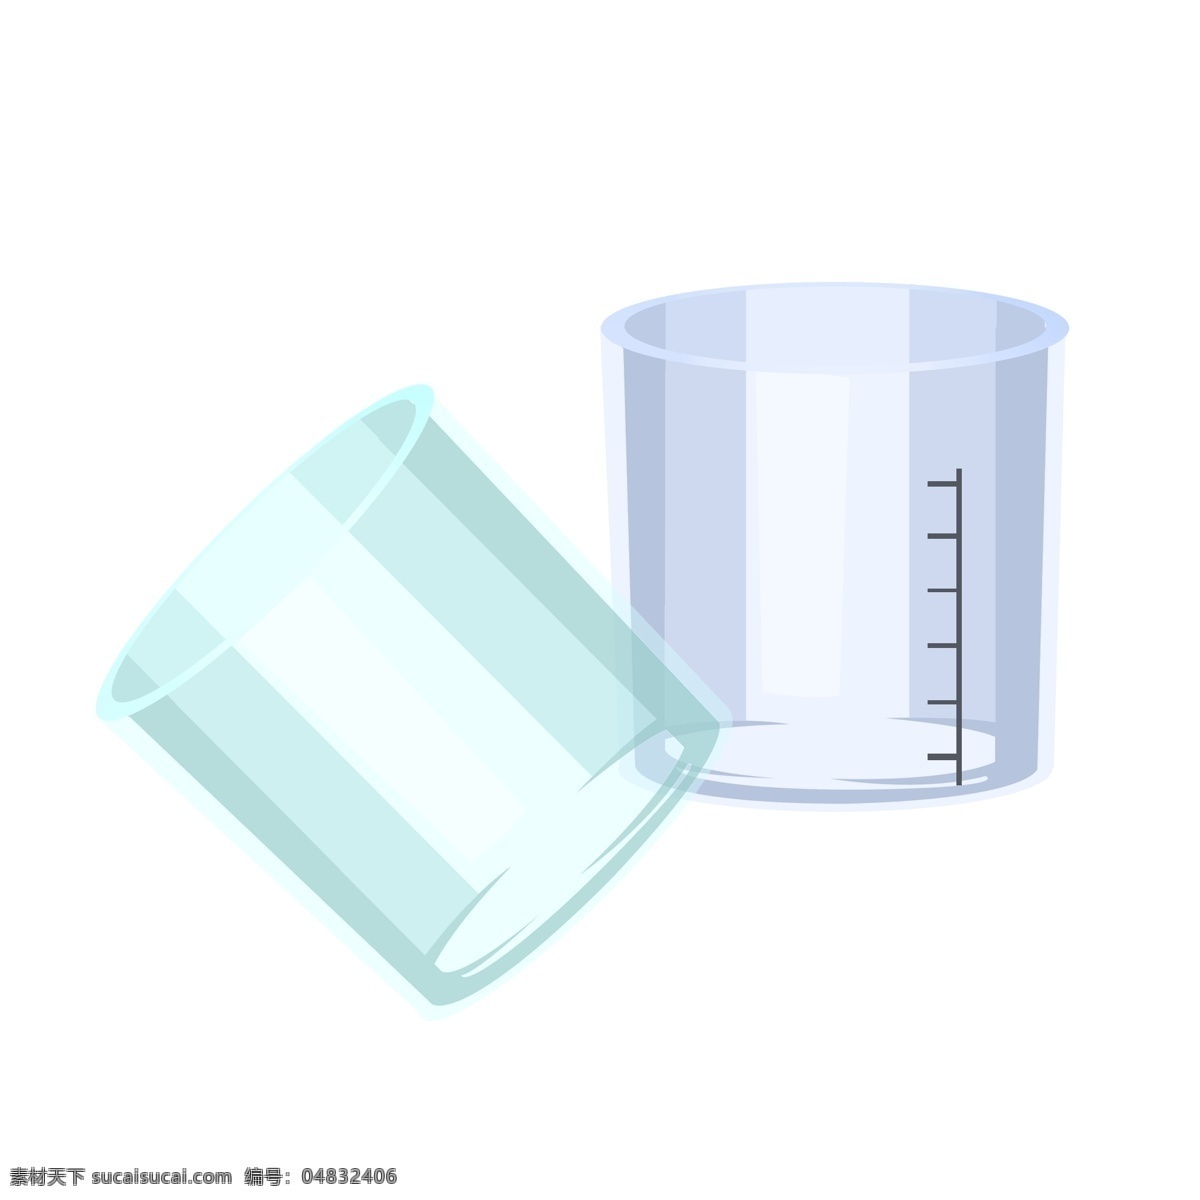 两个 玻璃 量筒 插画 玻璃量筒 两个玻璃量筒 玻璃量筒插画 量杯 玻璃容器 量杯容器